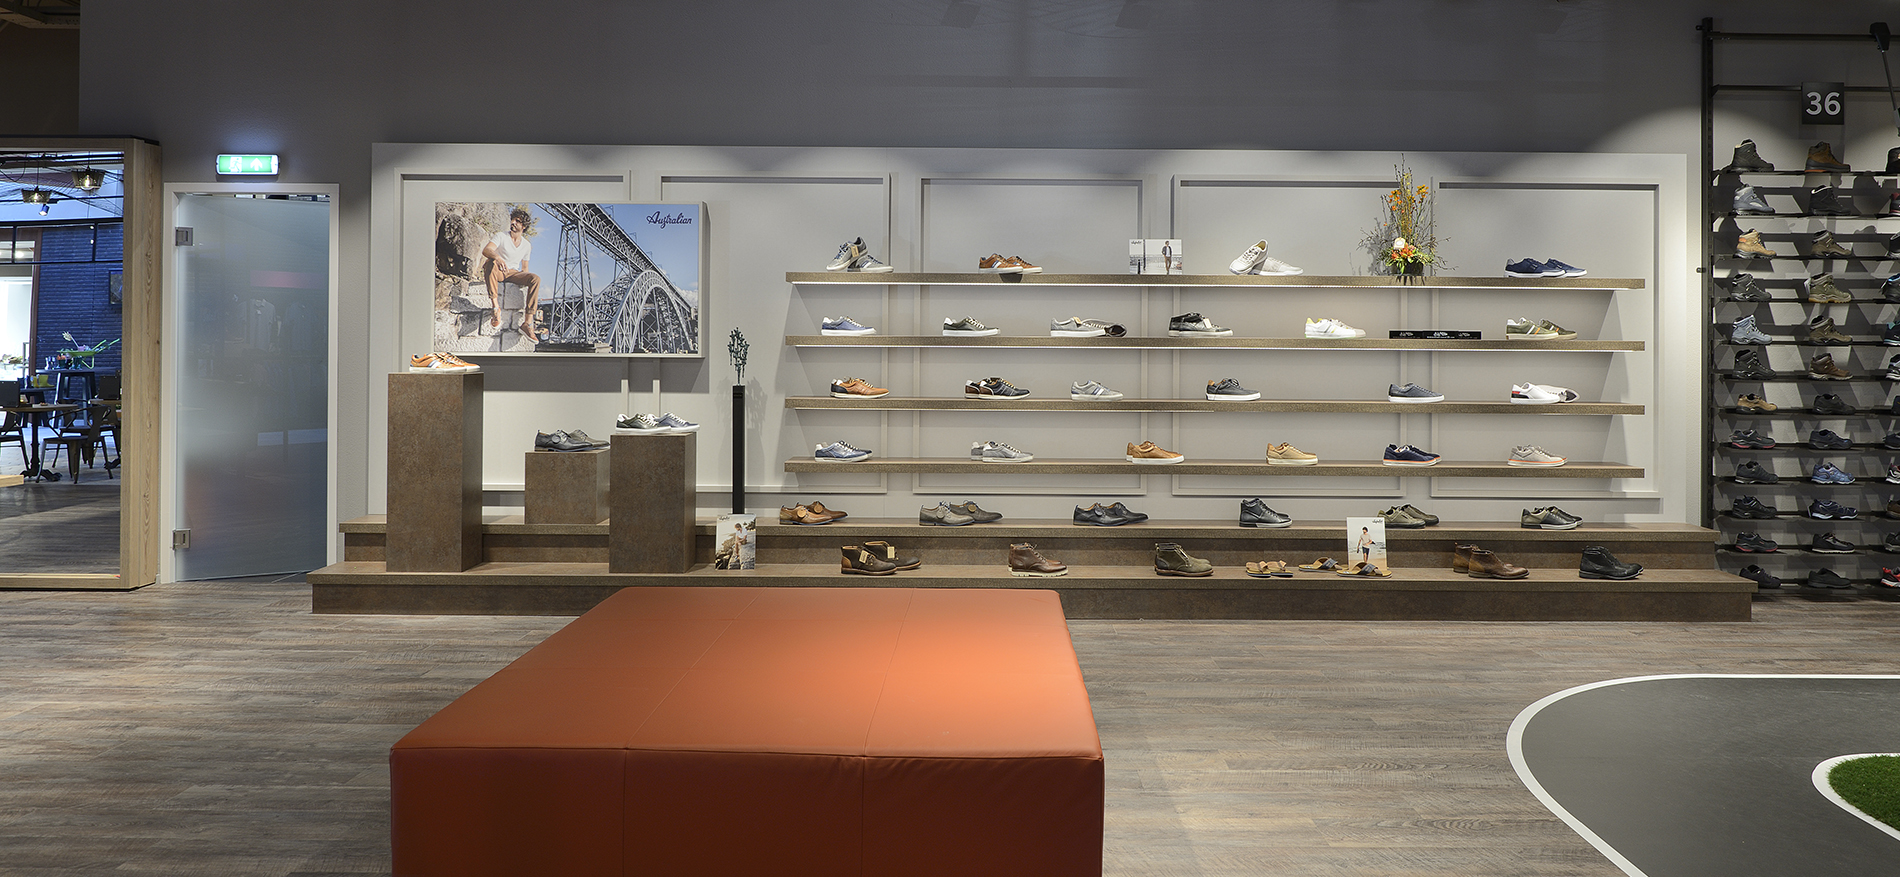 Snoeren Shoes and Foot specialist | Teteringen (NL) - 